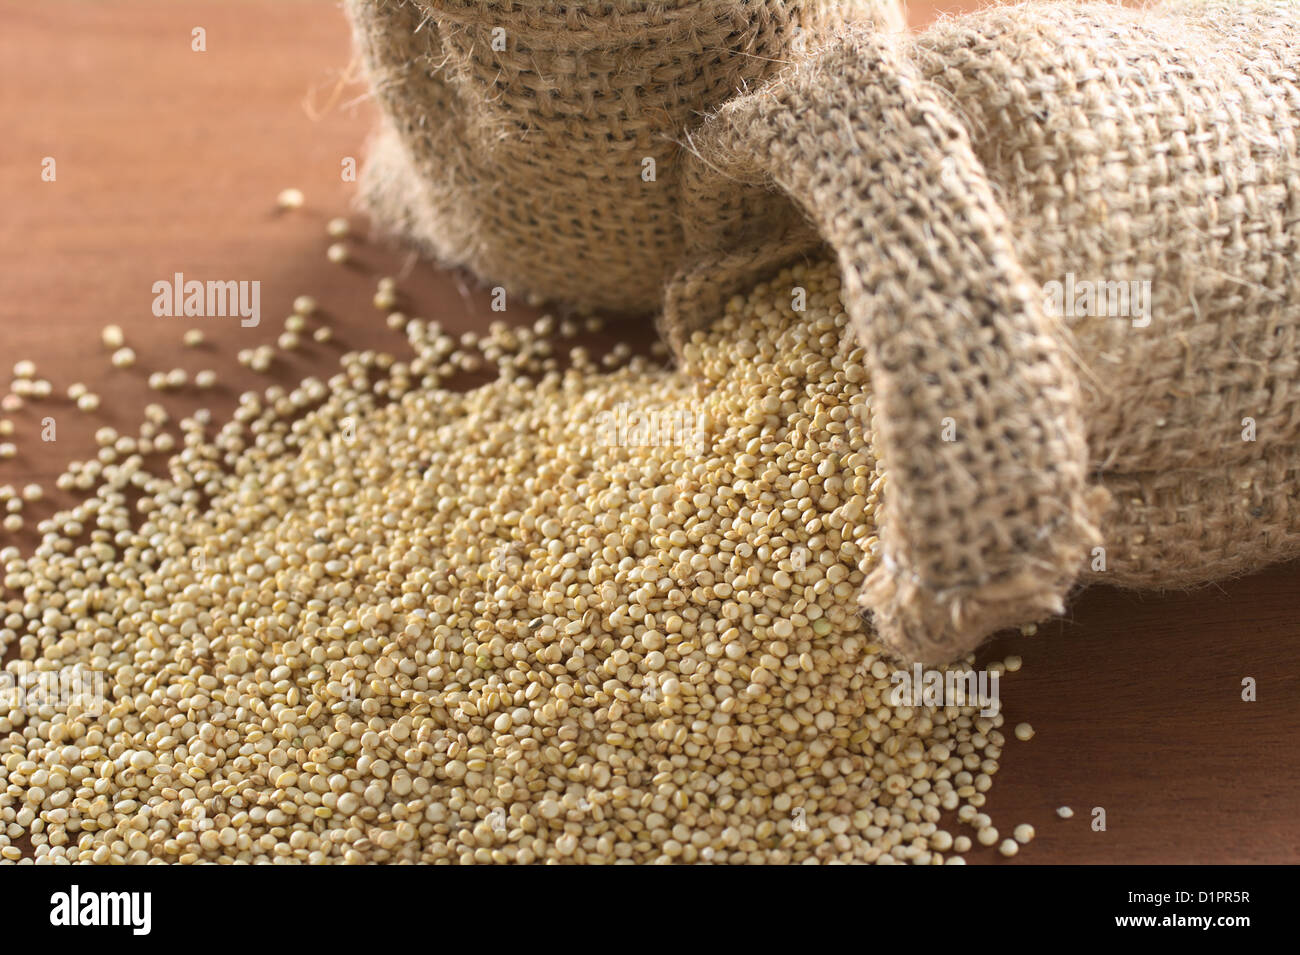 Les grains de quinoa blanc brut en sac de jute sur le bois. Le quinoa est cultivé dans les Andes et est apprécié pour sa haute teneur en protéines Banque D'Images